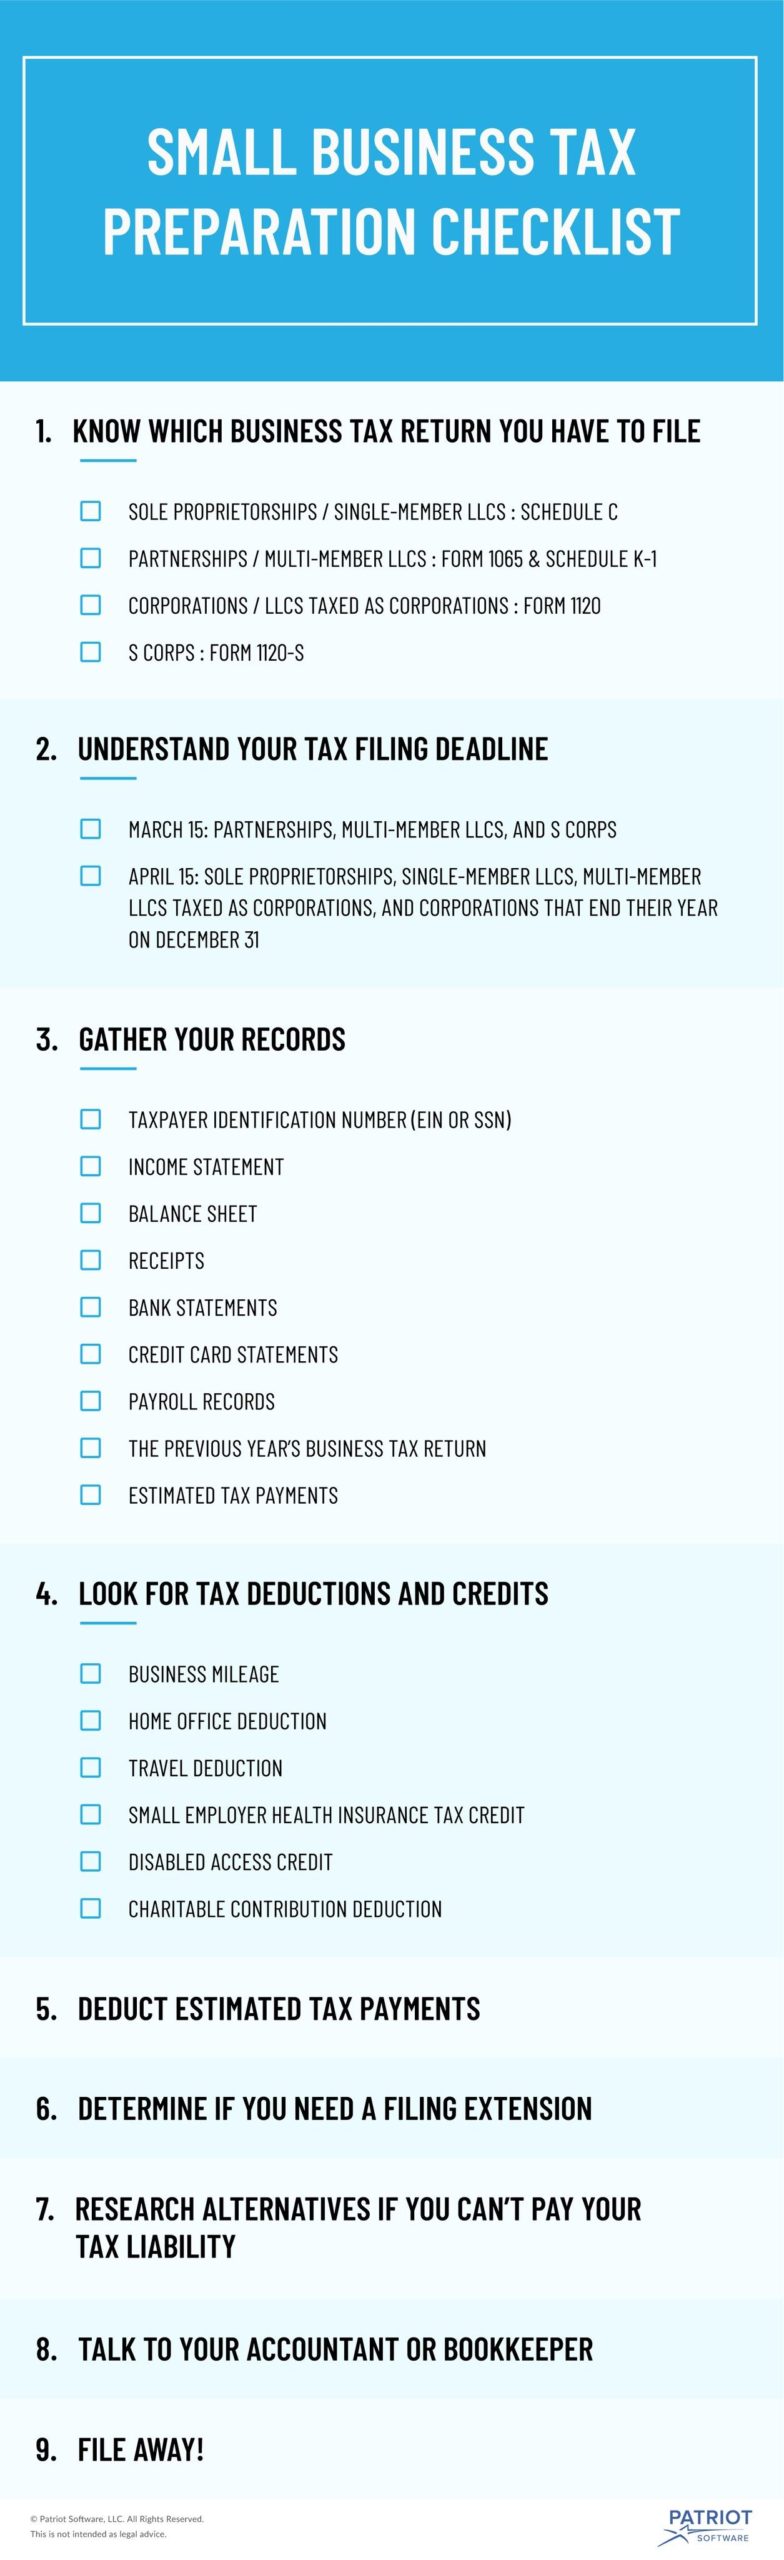 checklist voor belastingvoorbereiding voor kleine bedrijven 